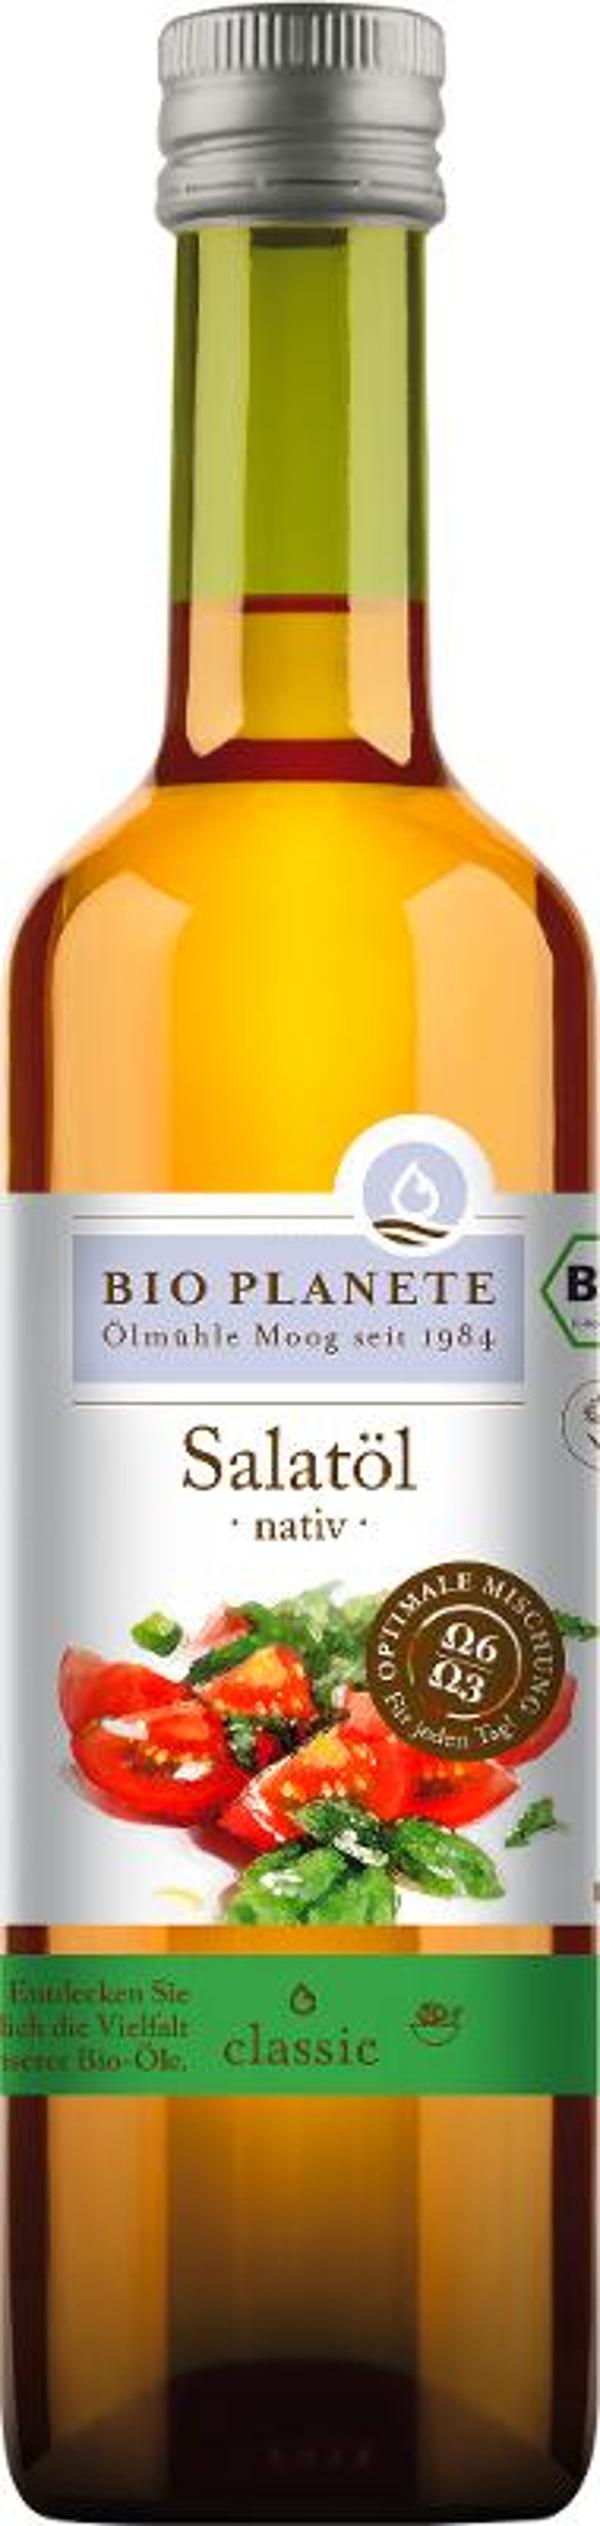 Produktfoto zu Salatöl - nativ - 500ml